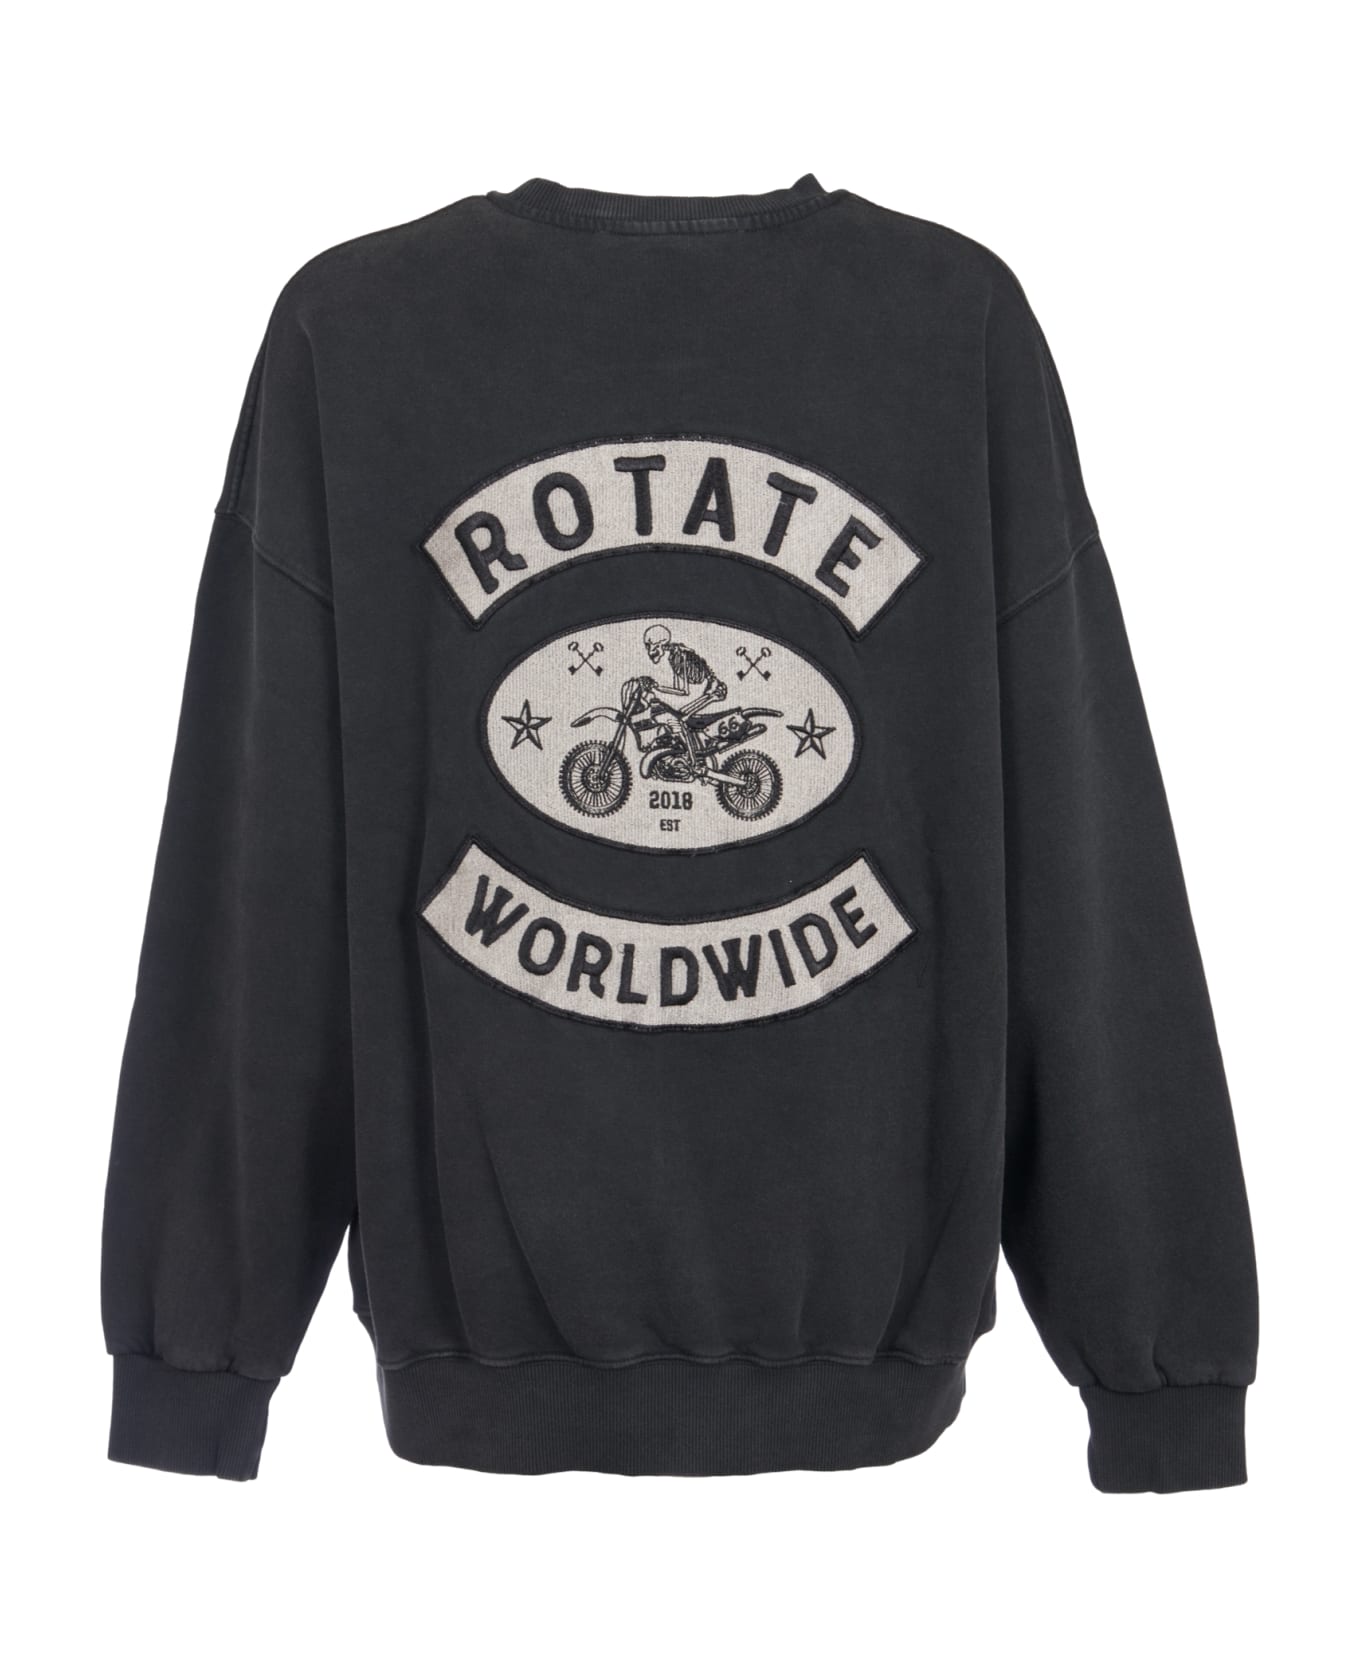 Rotate by Birger Christensen Logo Embroidered Sweatshirt - Black